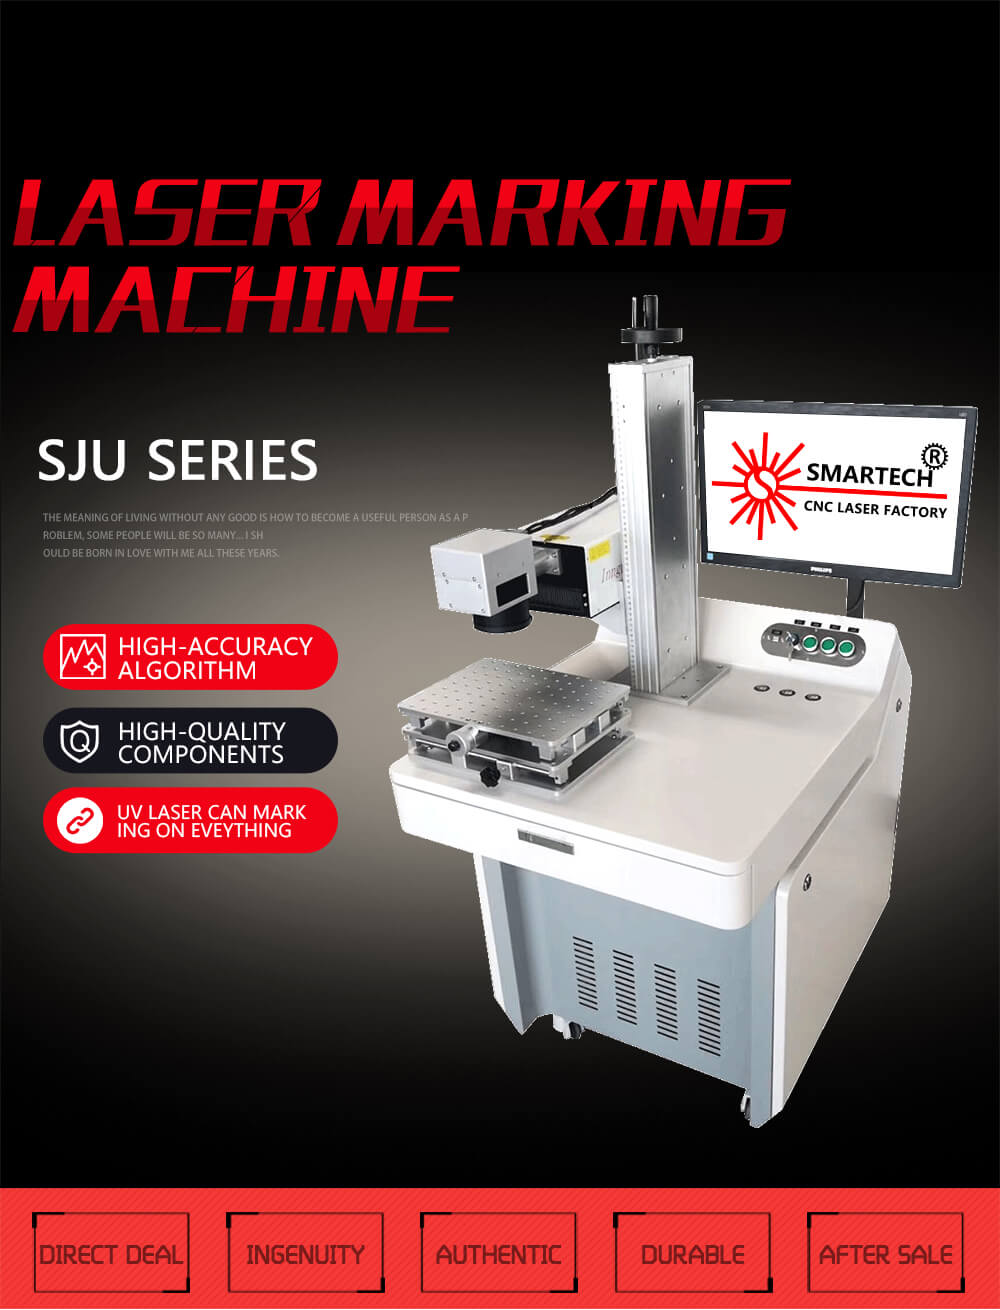 UV Laser Marking Machine For Eye Glasses